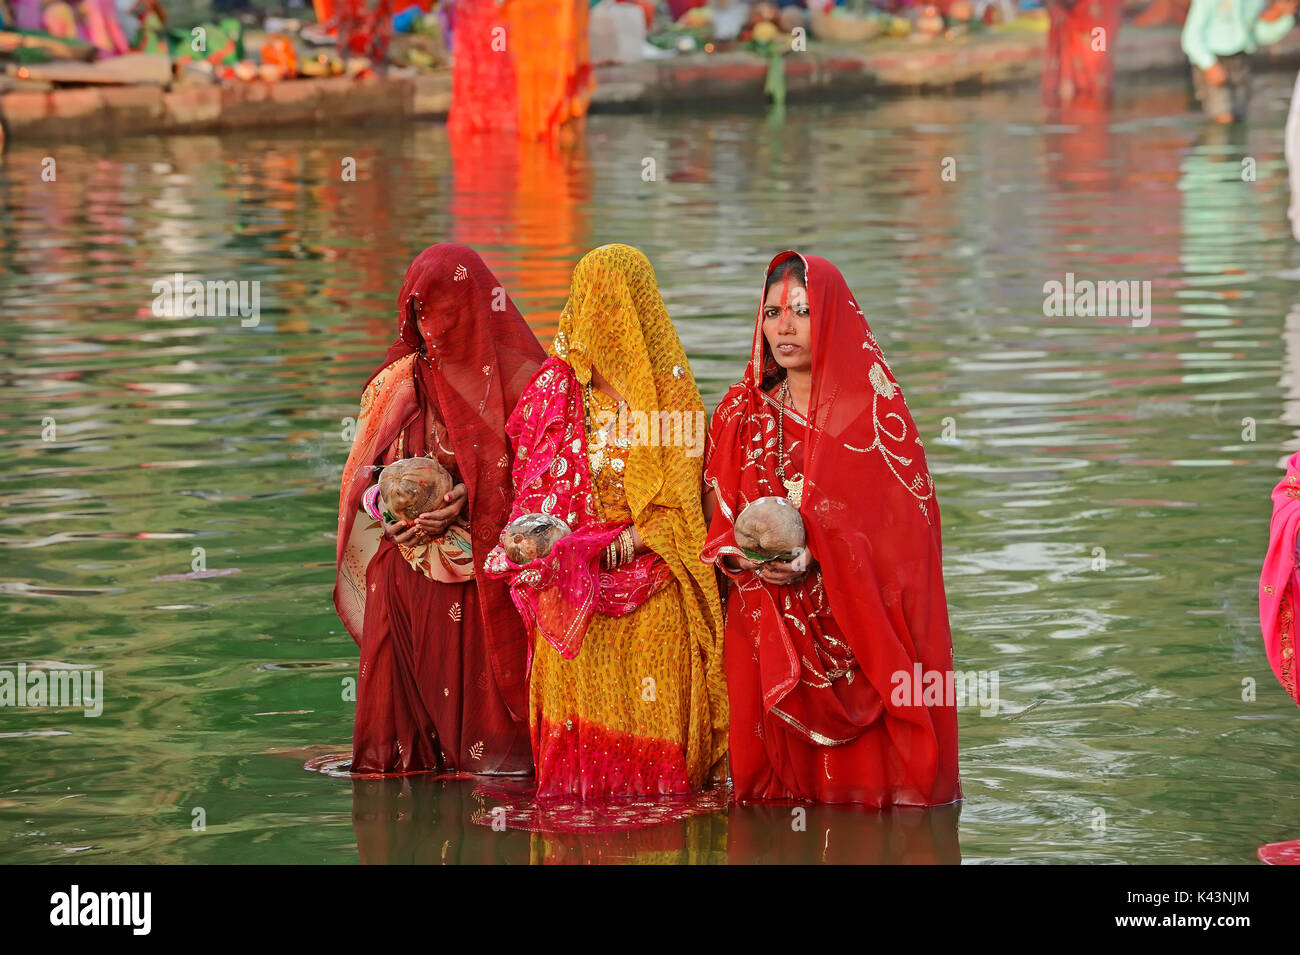 Hinduistische Frauen an der Chhath Festival, New Delhi, Indien | Hindu-Frauen beim hinduistischen Chhath Fest, Neu-Delhi, Indien Stockfoto